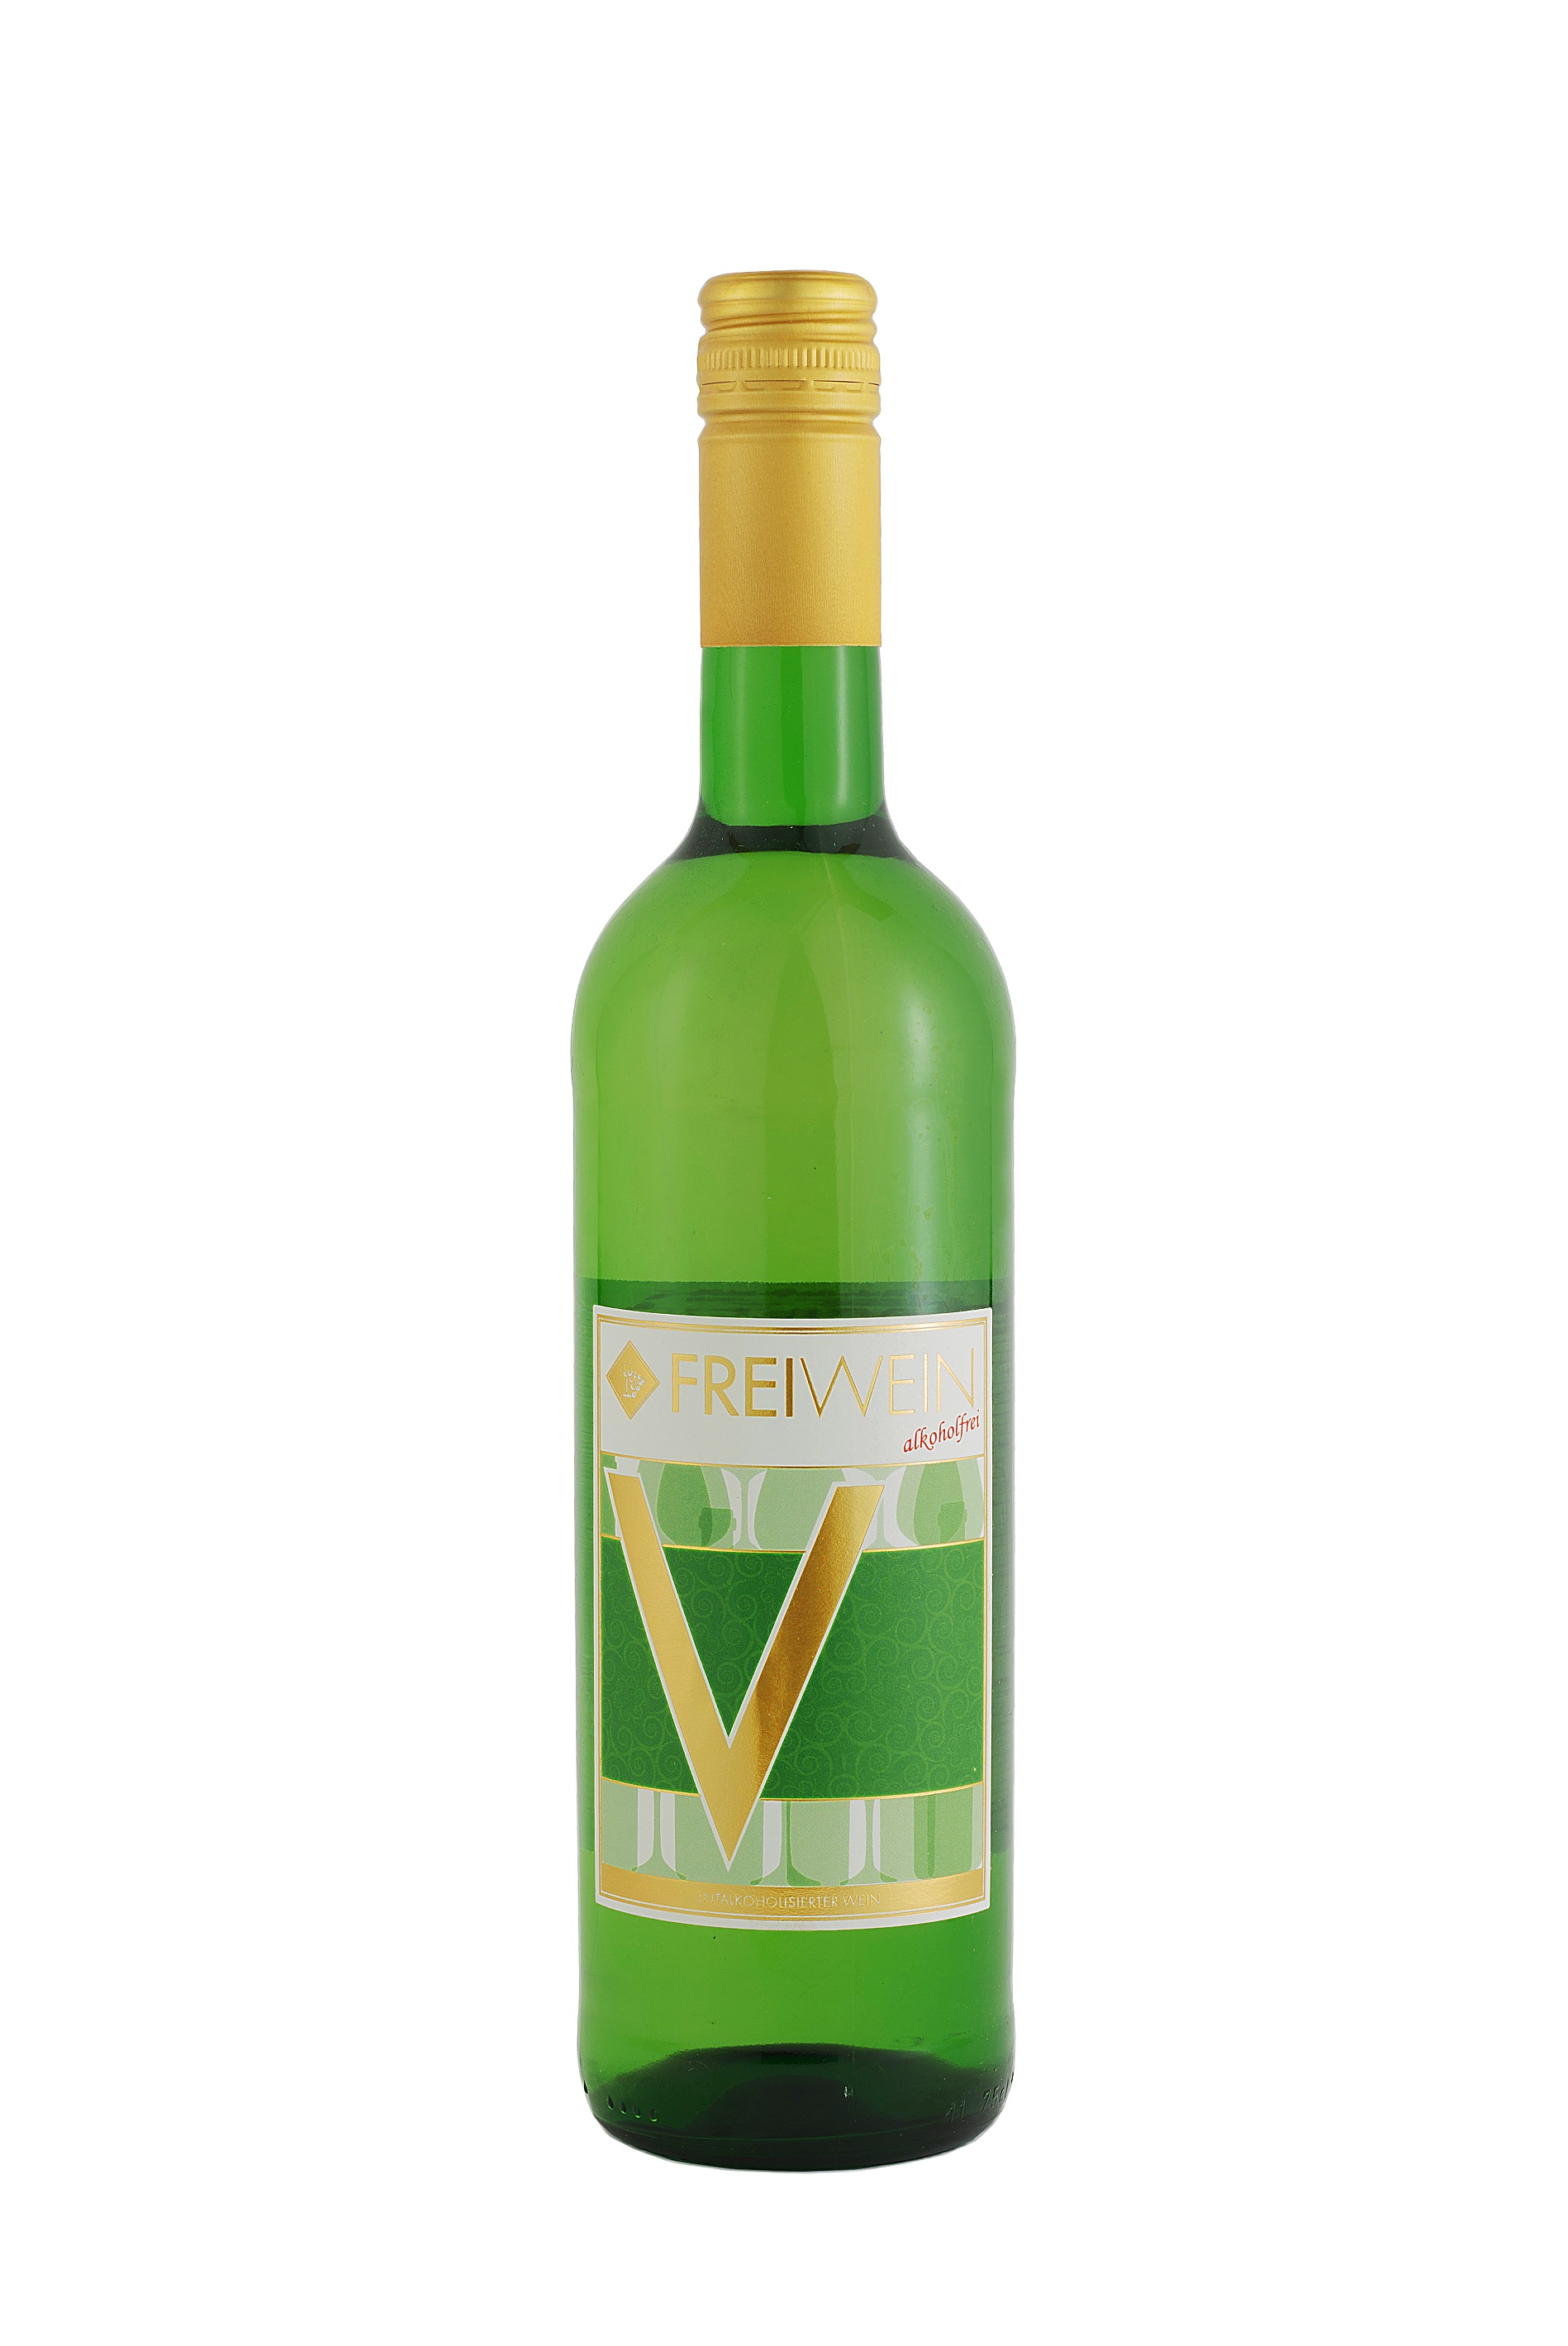 FreiWein V - Grüner Veltliner - trockener alkoholfreier Weißwein Österreich 0,75l